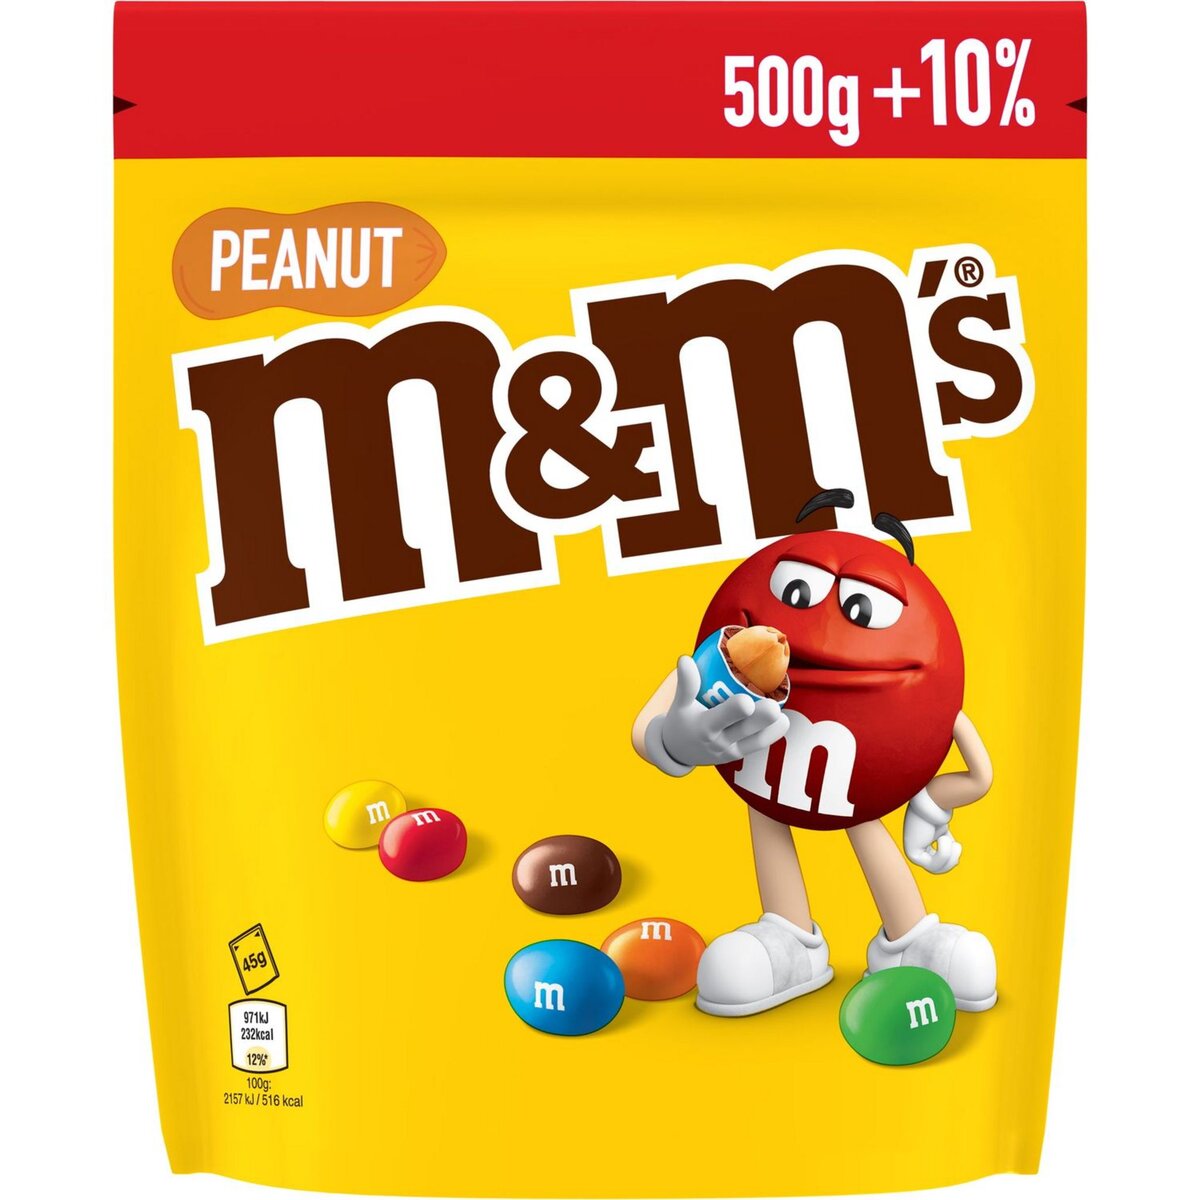 M&M'S Peanut Bonbons chocolatés cacahuète +10% offert 500g